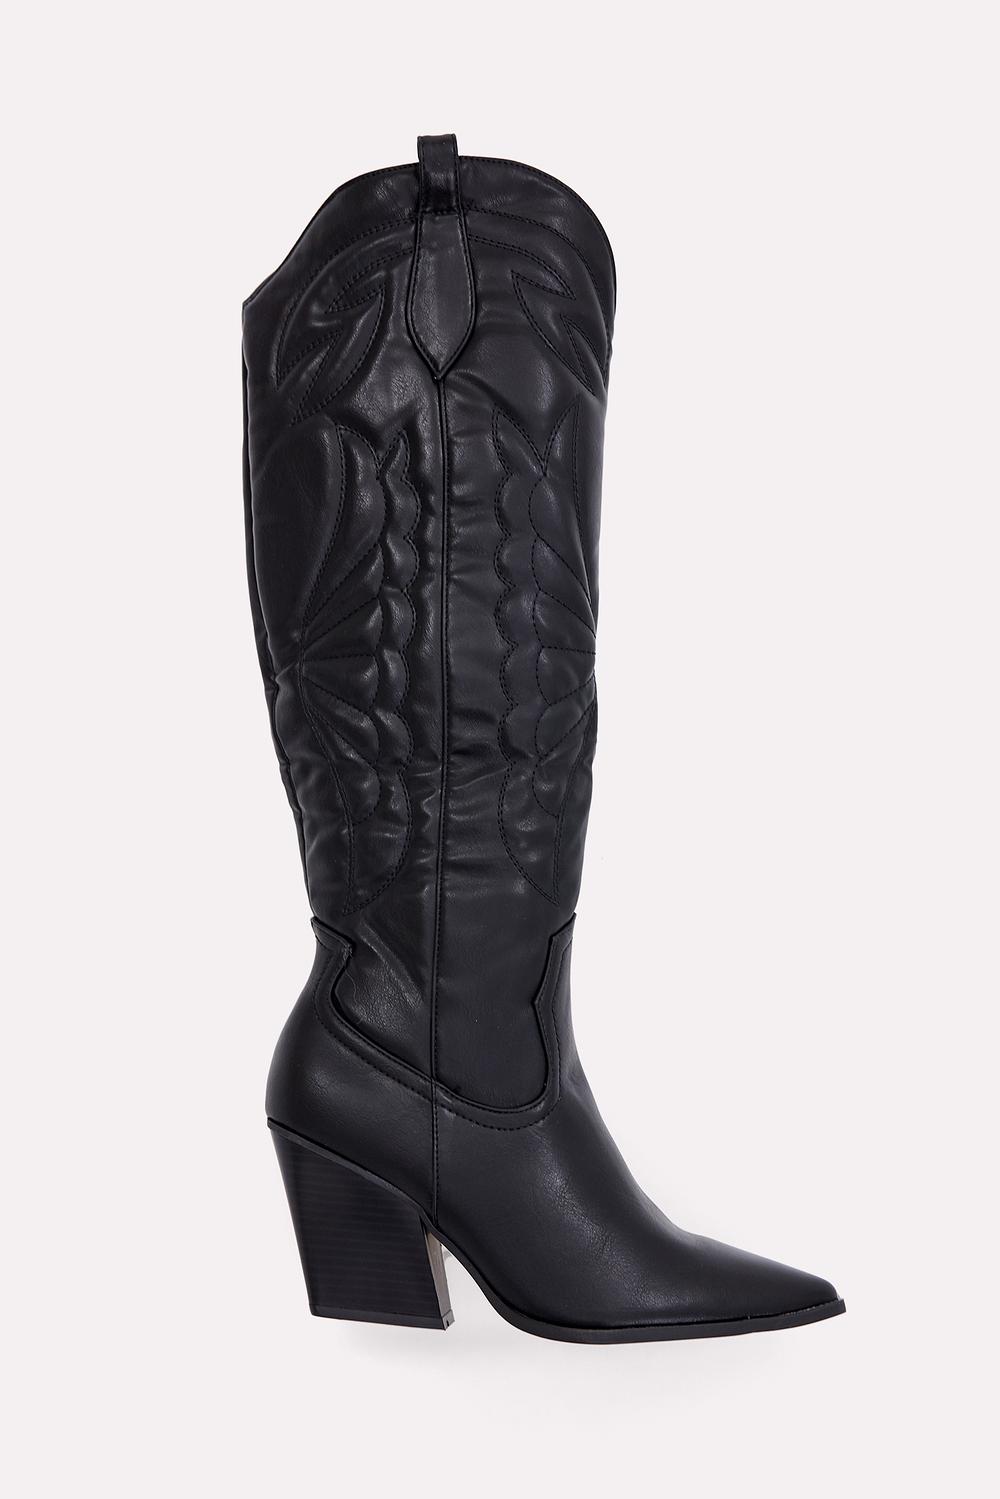 Black cowboy boots